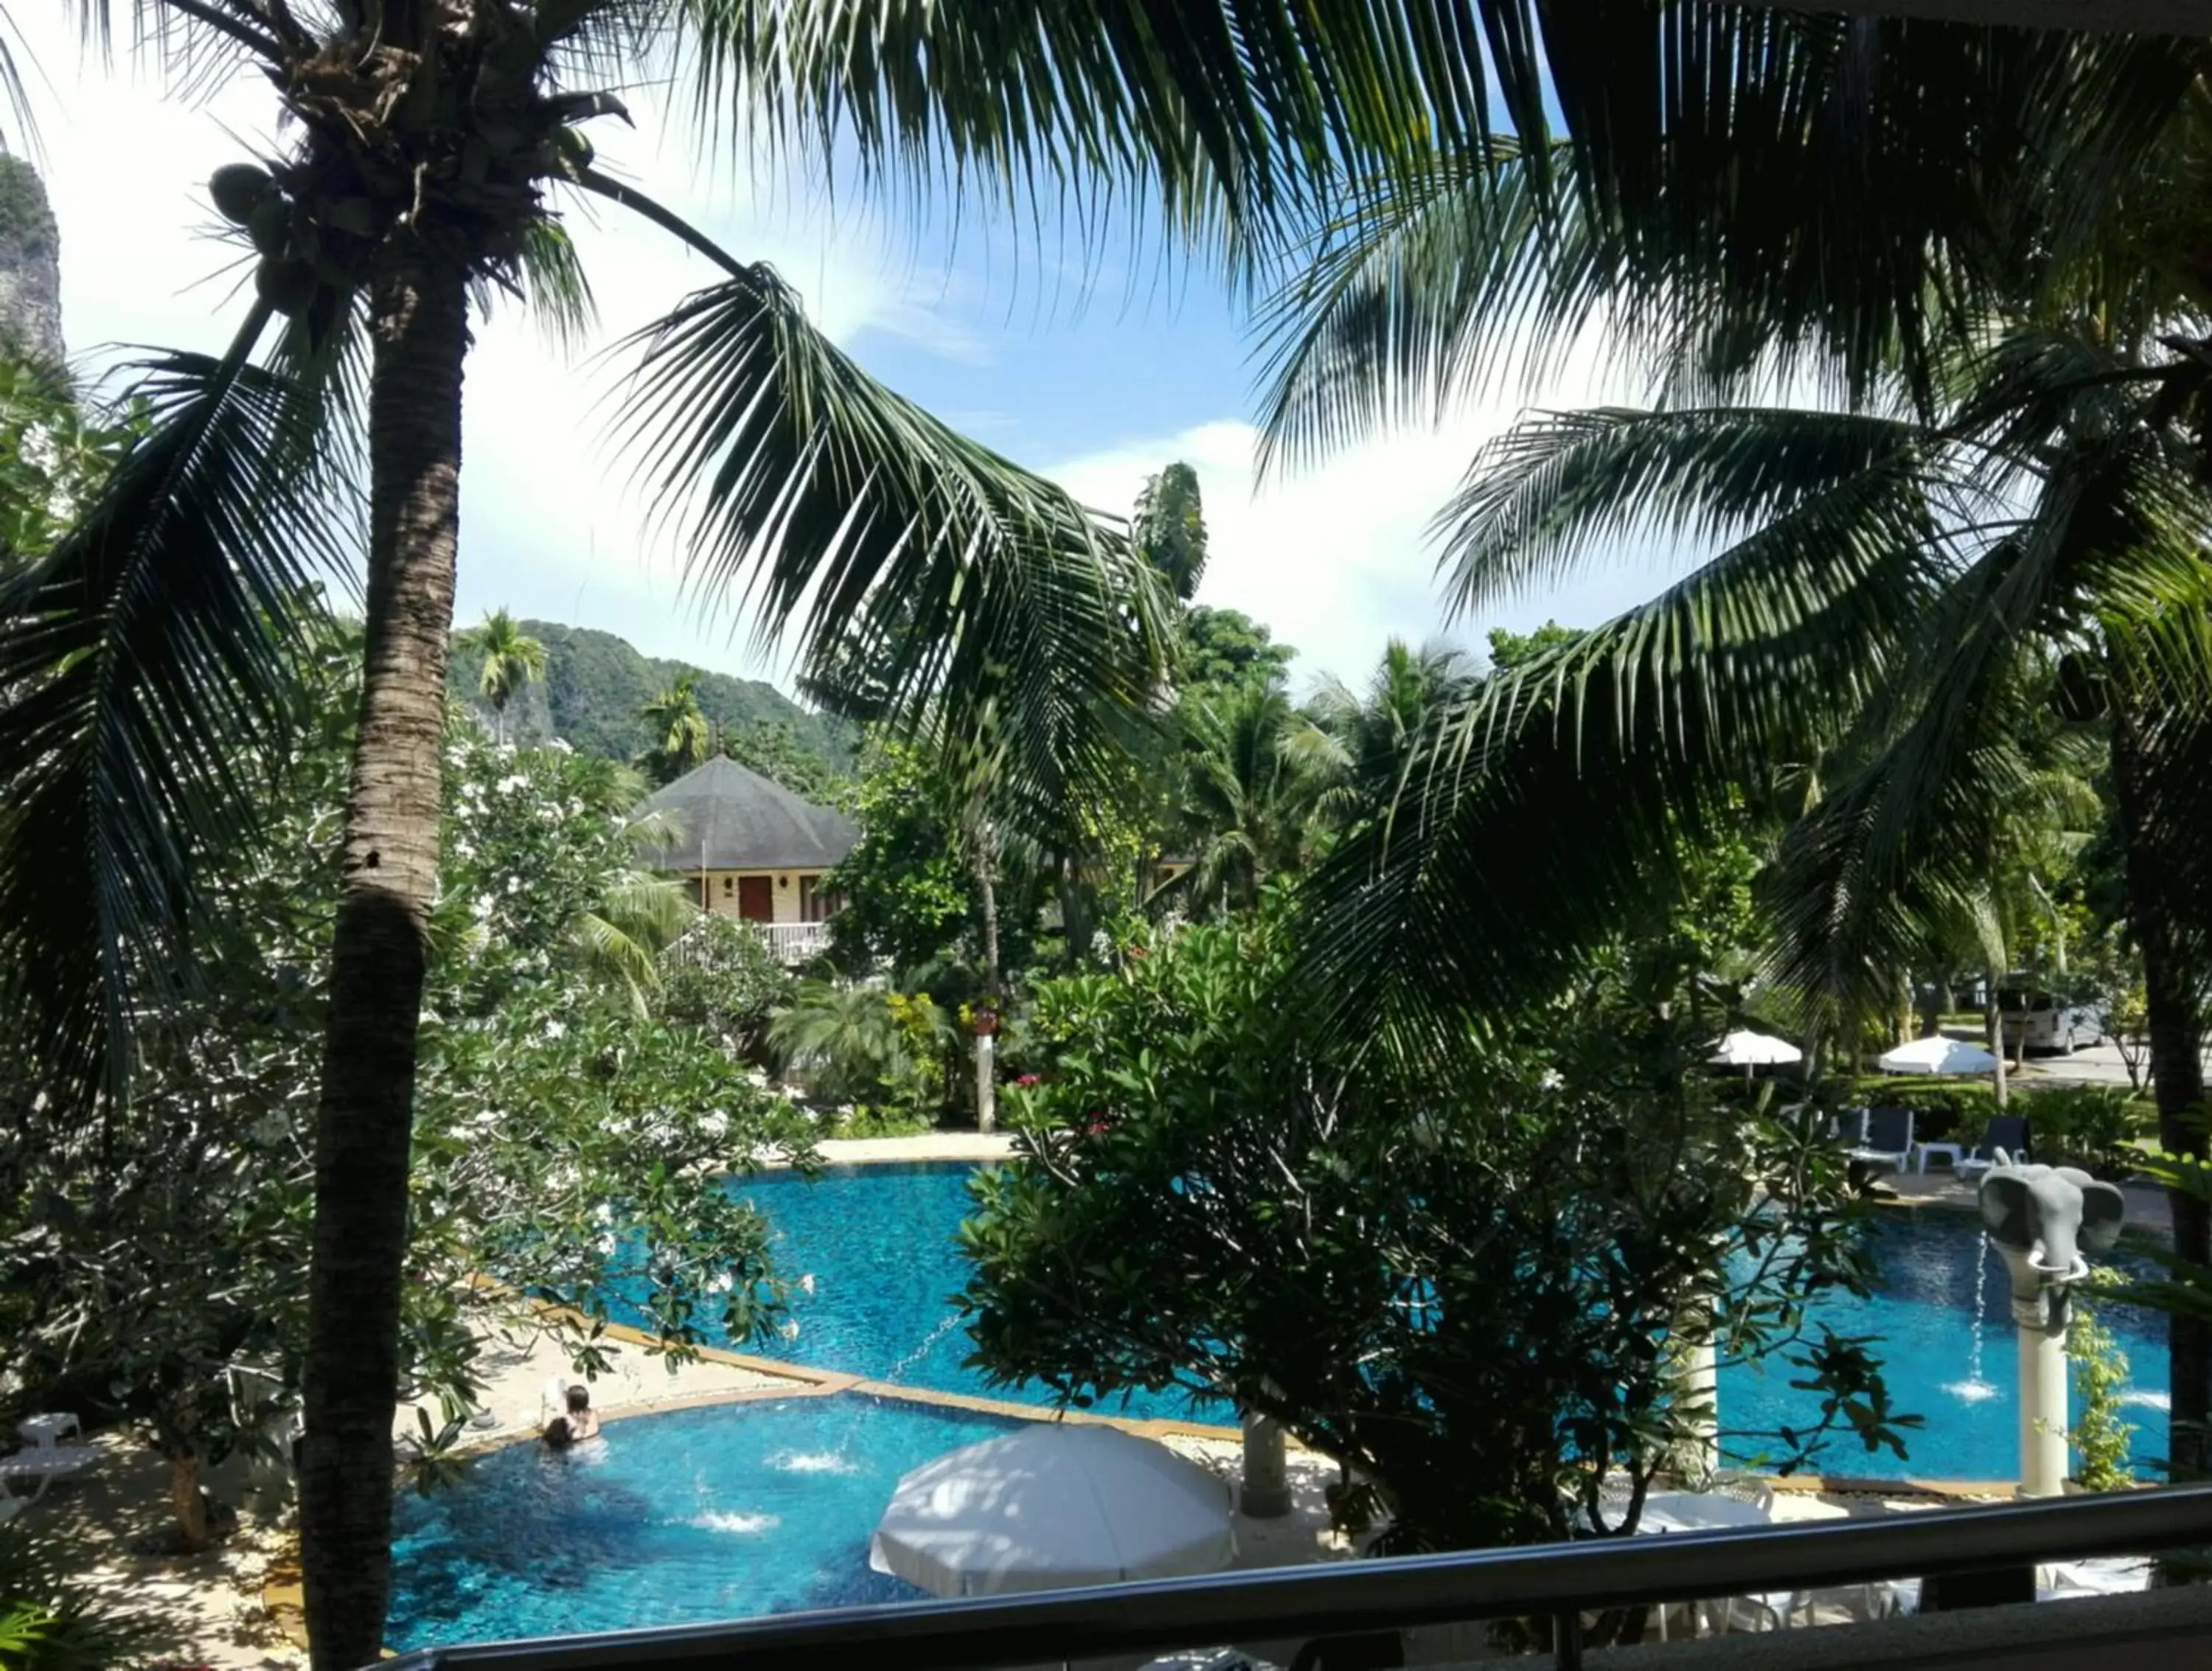 Pool View in Golden Beach Resort